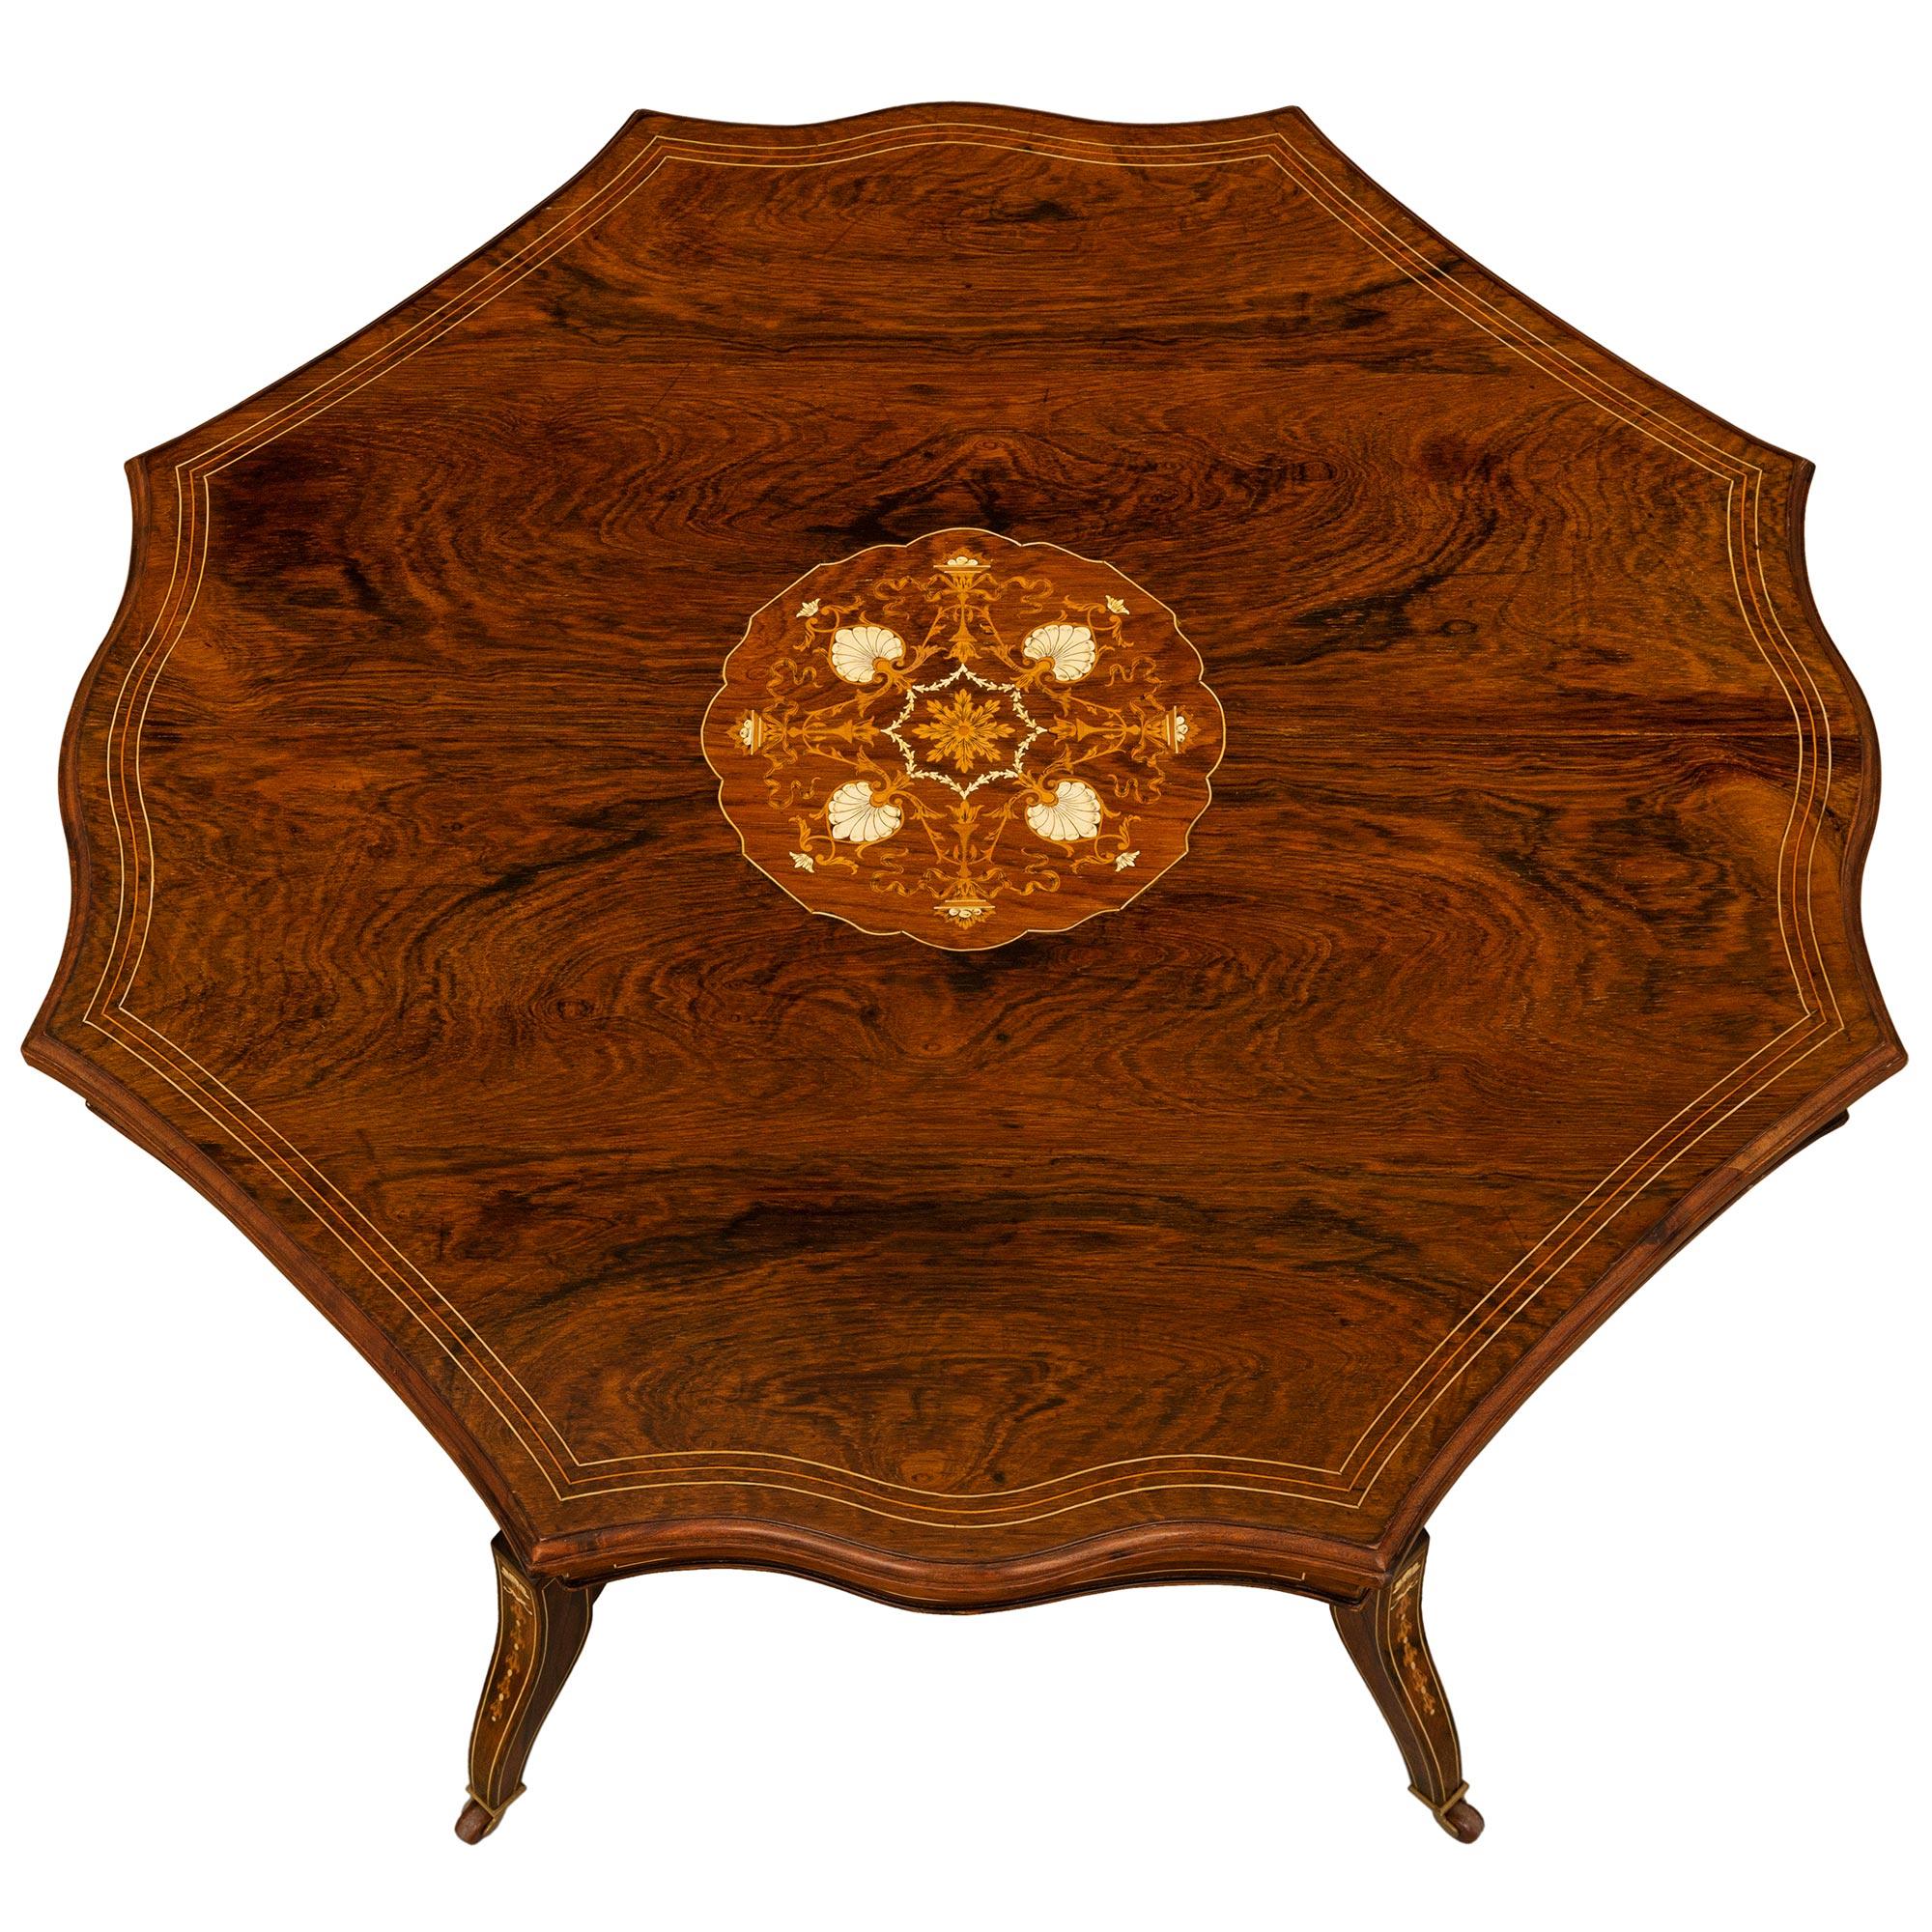 Ein markanter und einzigartiger englischer Regency-Tisch aus dem 19. Jahrhundert aus Palisander, Knochen und Intarsien. Der Tisch steht auf eleganten, leicht geschwungenen Füßen mit hübschen Blattintarsien. Jeder Fuß ist durch einen äußerst